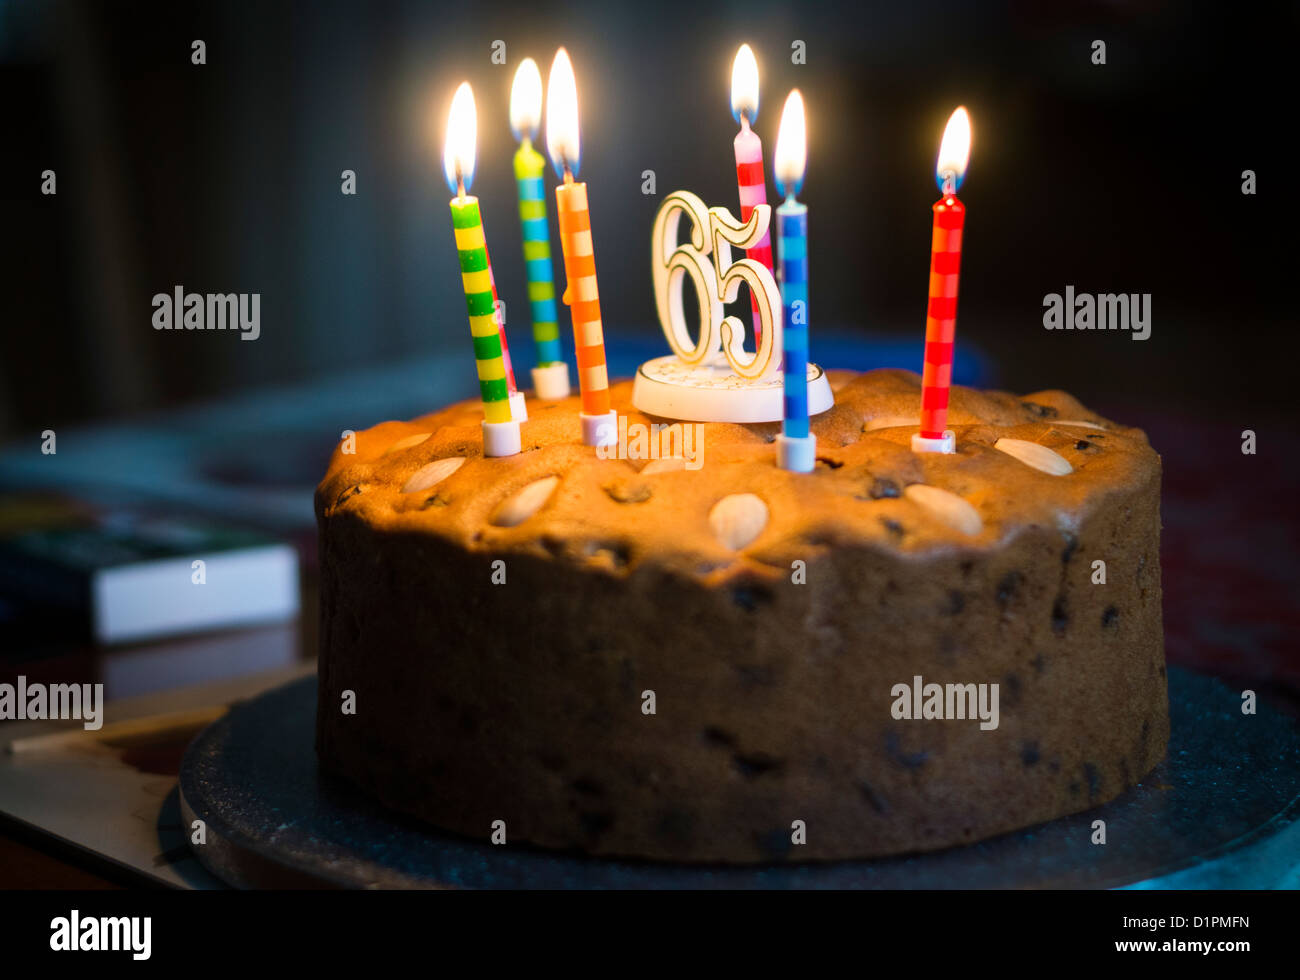 Allumé des bougies sur un gâteau célébrant le 65e anniversaire et la retraite. Banque D'Images